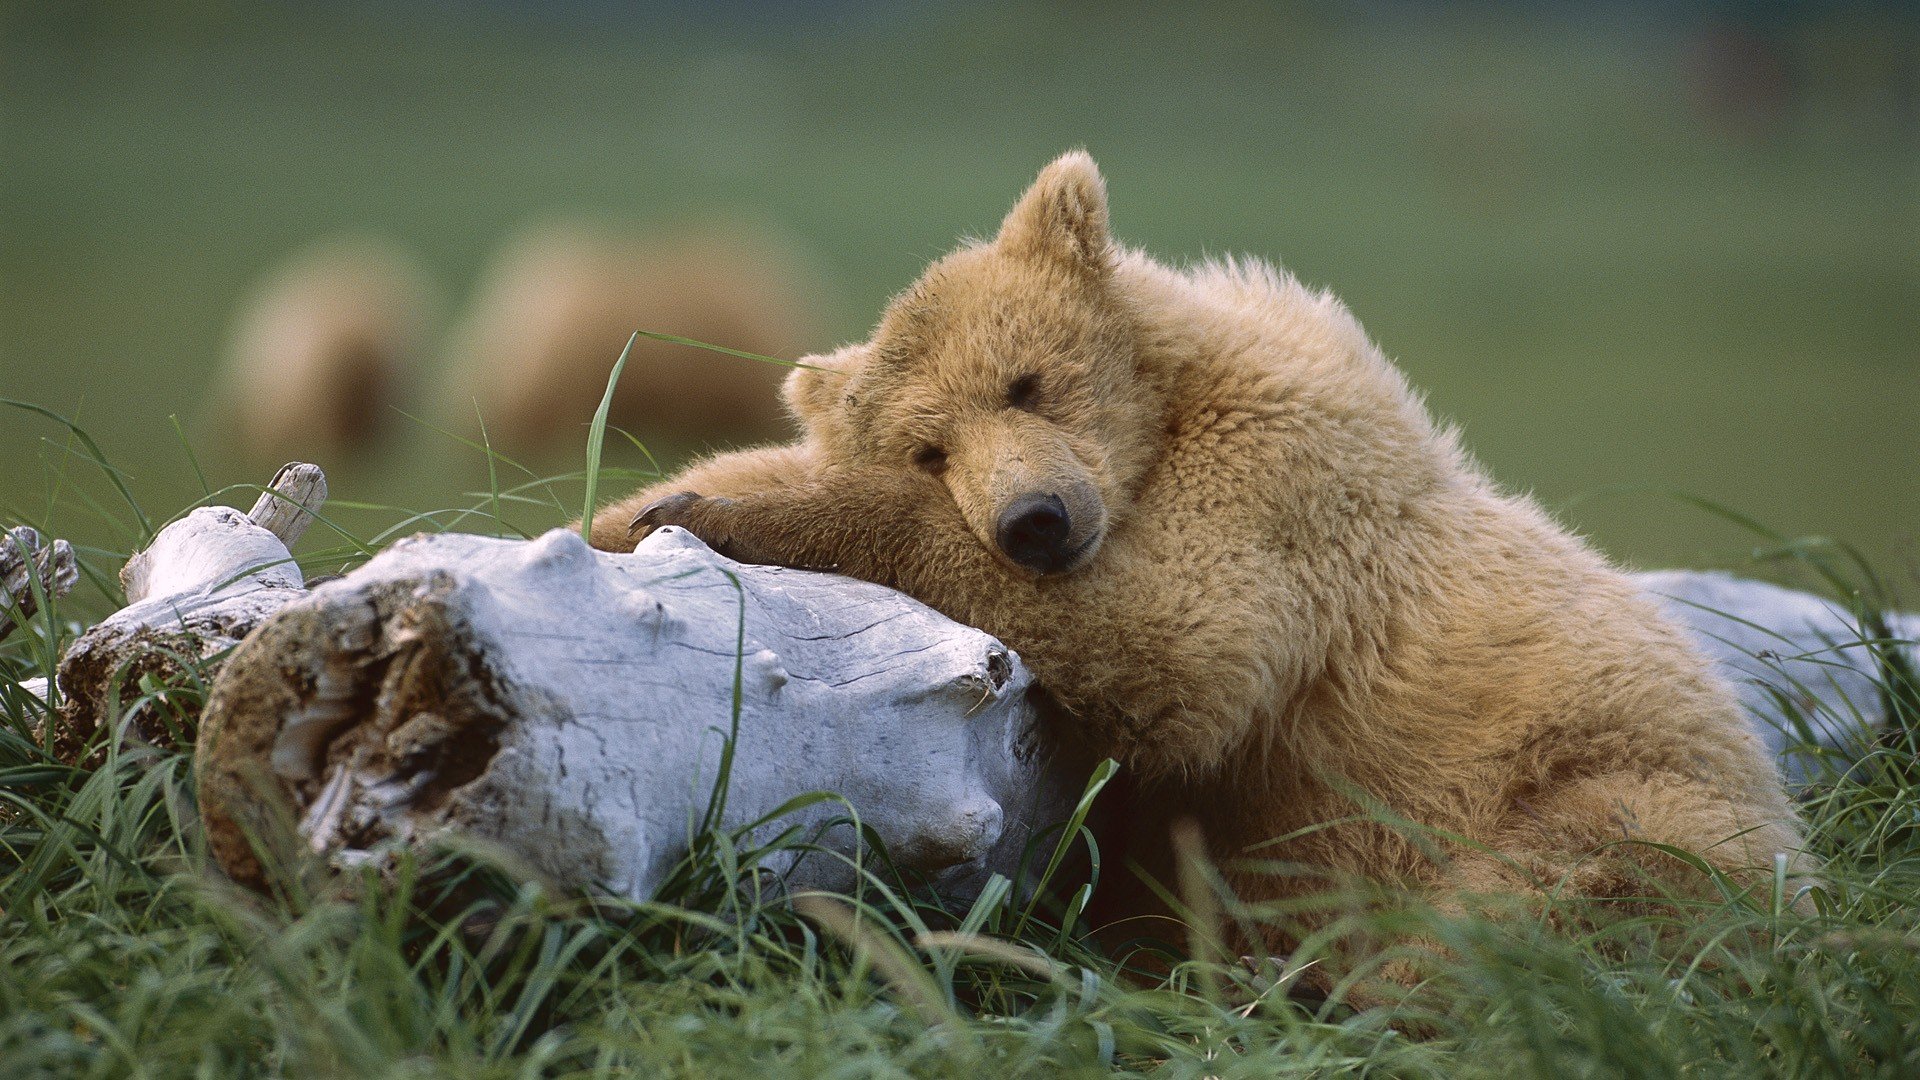 https://wallup.net/wp-content/uploads/2019/09/333386-animals-alaska-grizzly-bears-sleeping-bears-national-park.jpg